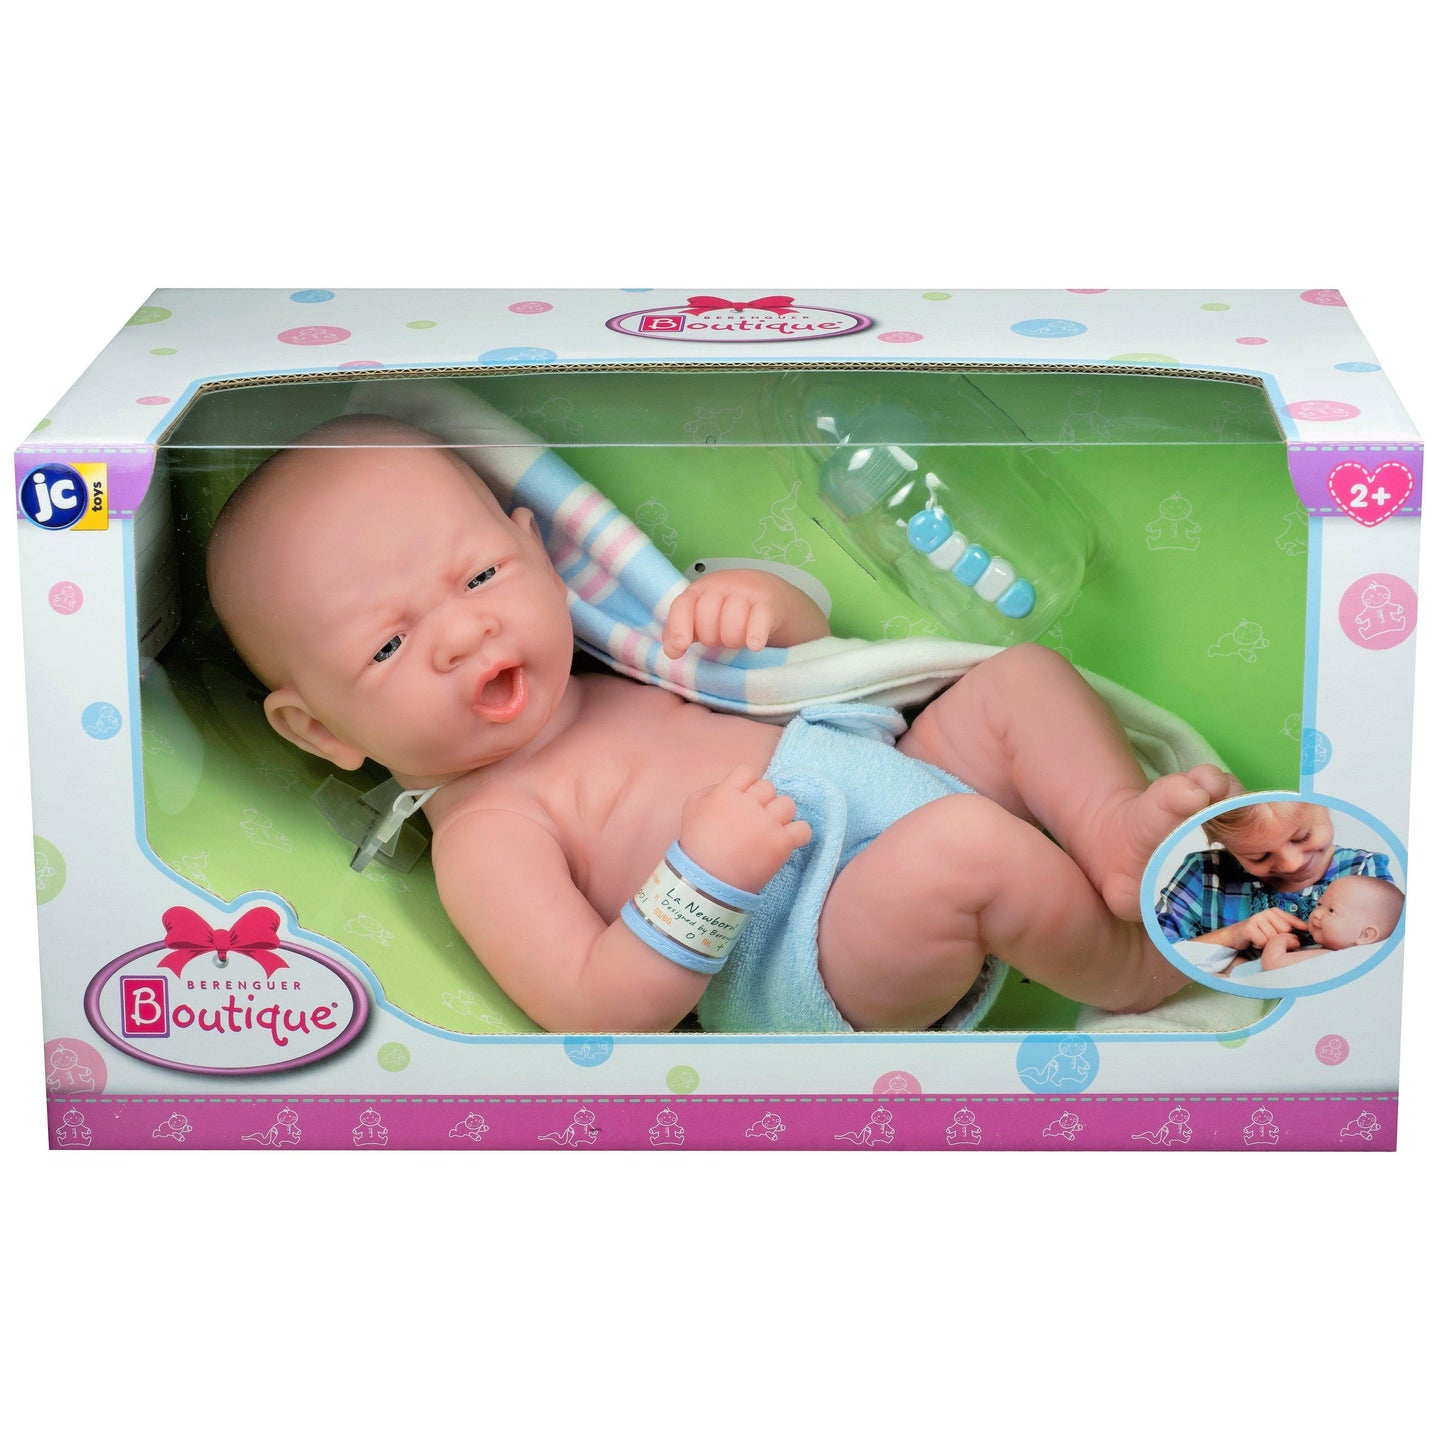 La Newborn "First Yawn" 15" Real Boy - JC Toys Group Inc.